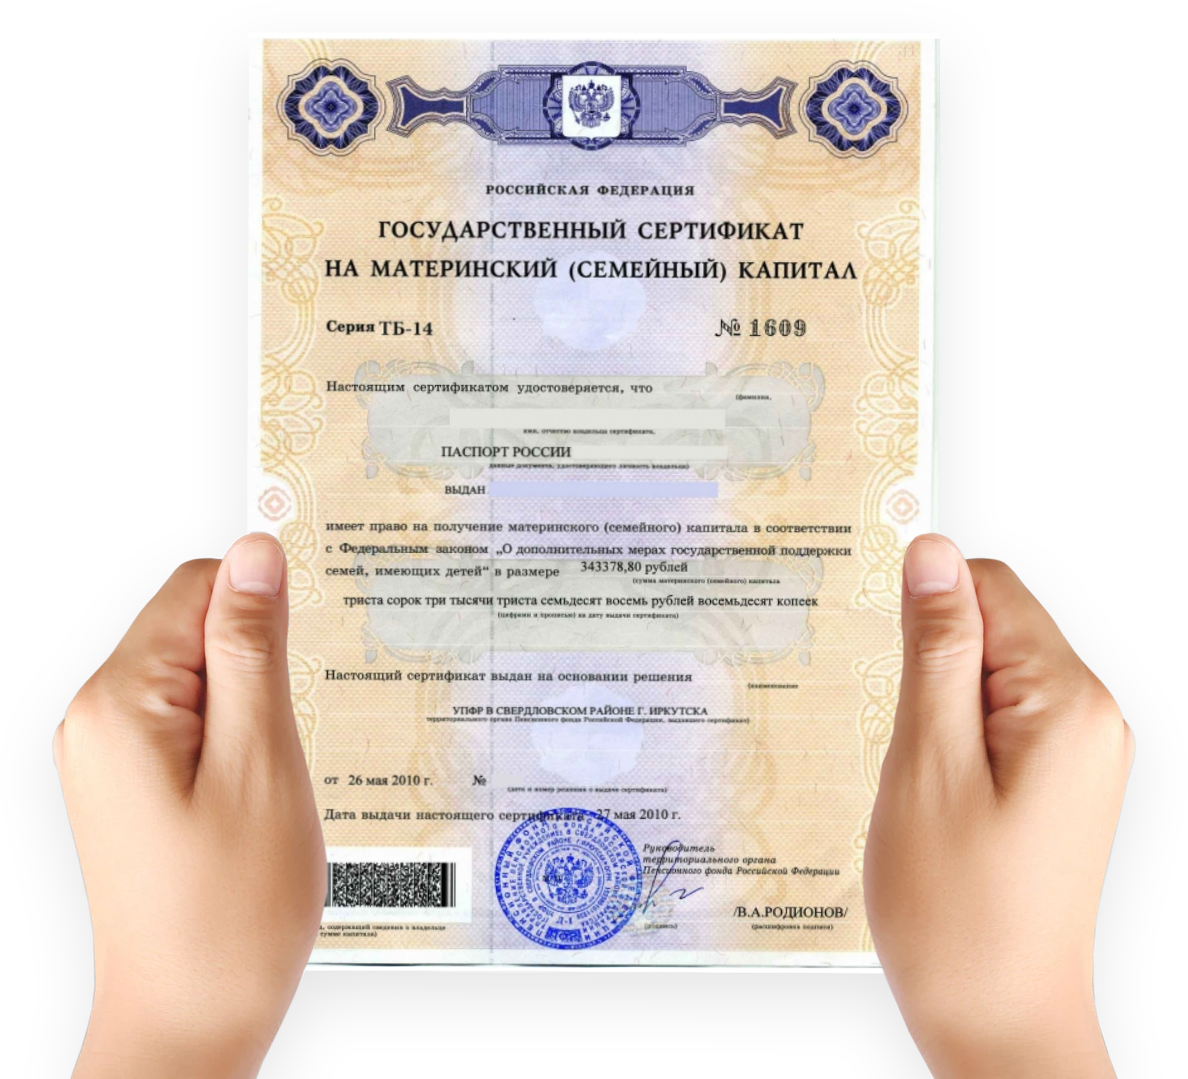 После получения сертификата материнского капитала. Как выглядит сертификат на мат капитал. Как выглядит мат капитал сертификат в электронном виде. Как выглядит документ на материнский капитал. Материнский капитал на второго ребенка сертификат как выглядит.